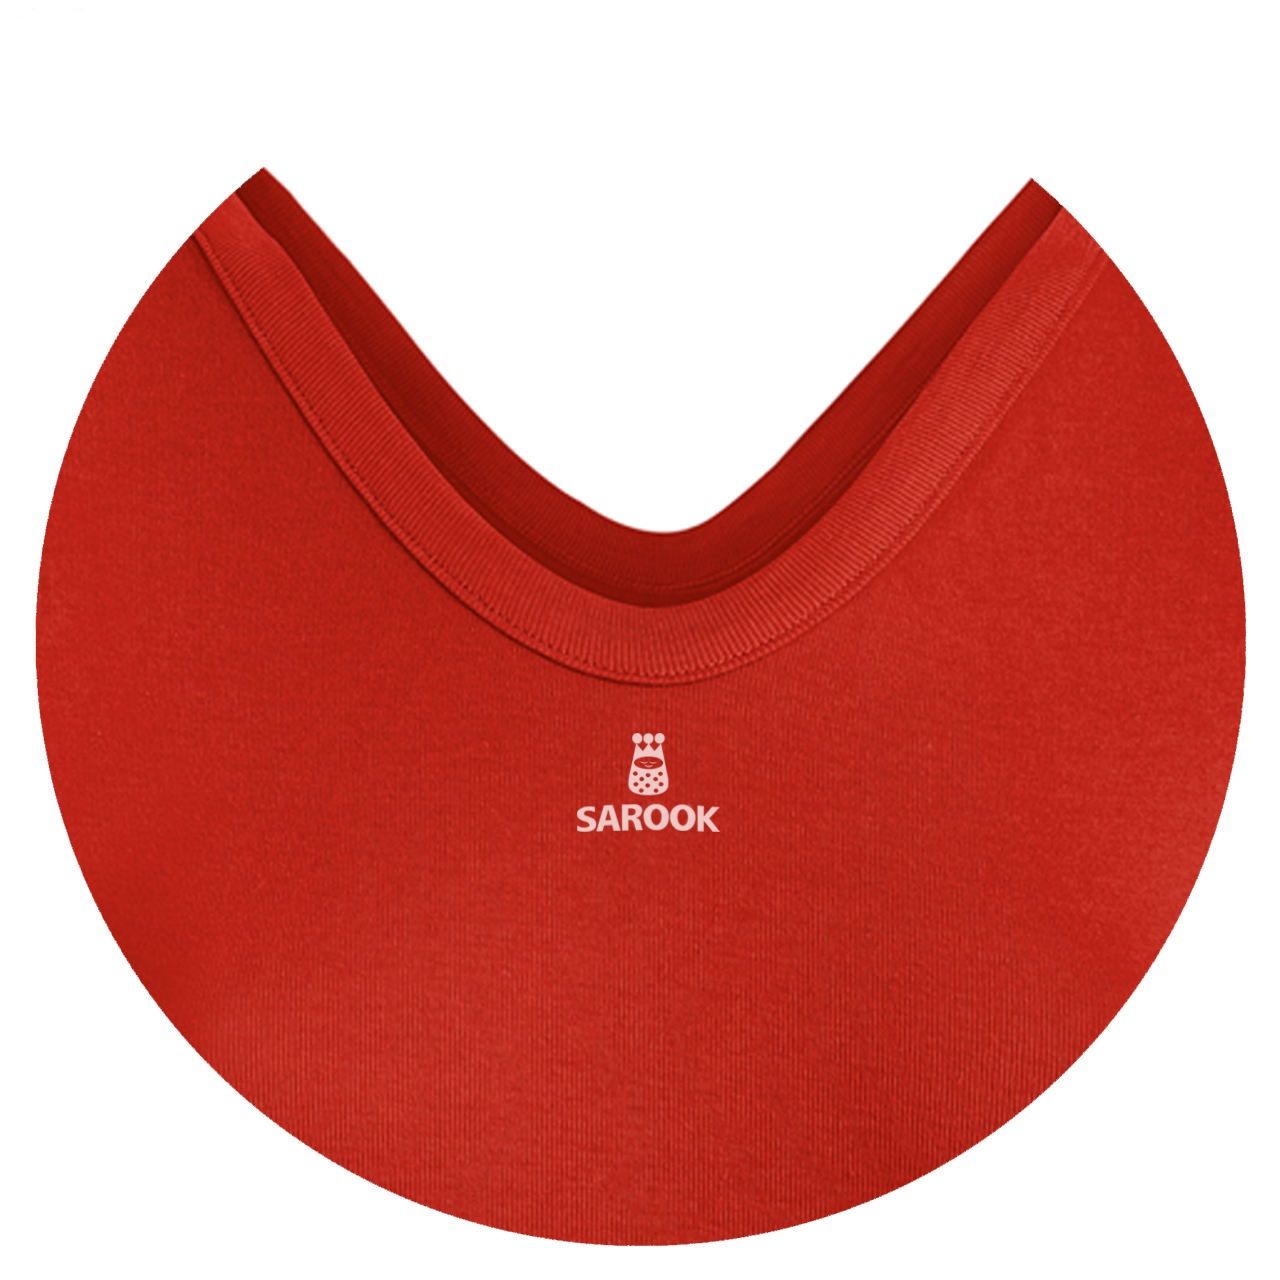 تی شرت زنانه ساروک مدل HYB رنگ قرمز -  - 3